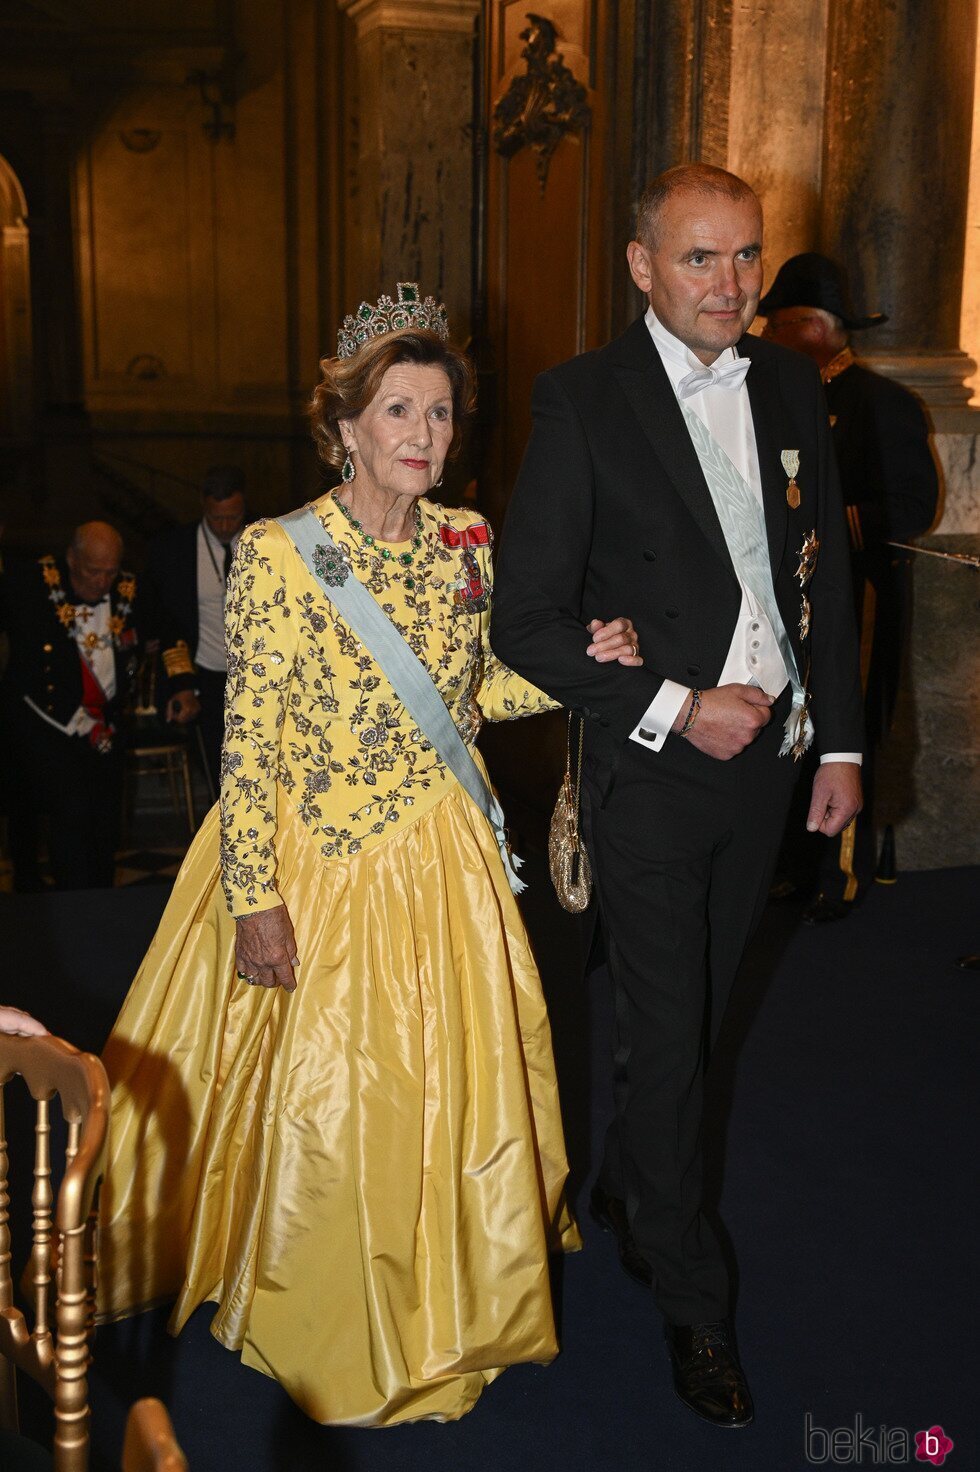 Sonia de Noruega con la Tiara de Esmeraldas en la cena por el Jubileo de Carlos Gustavo de Suecia